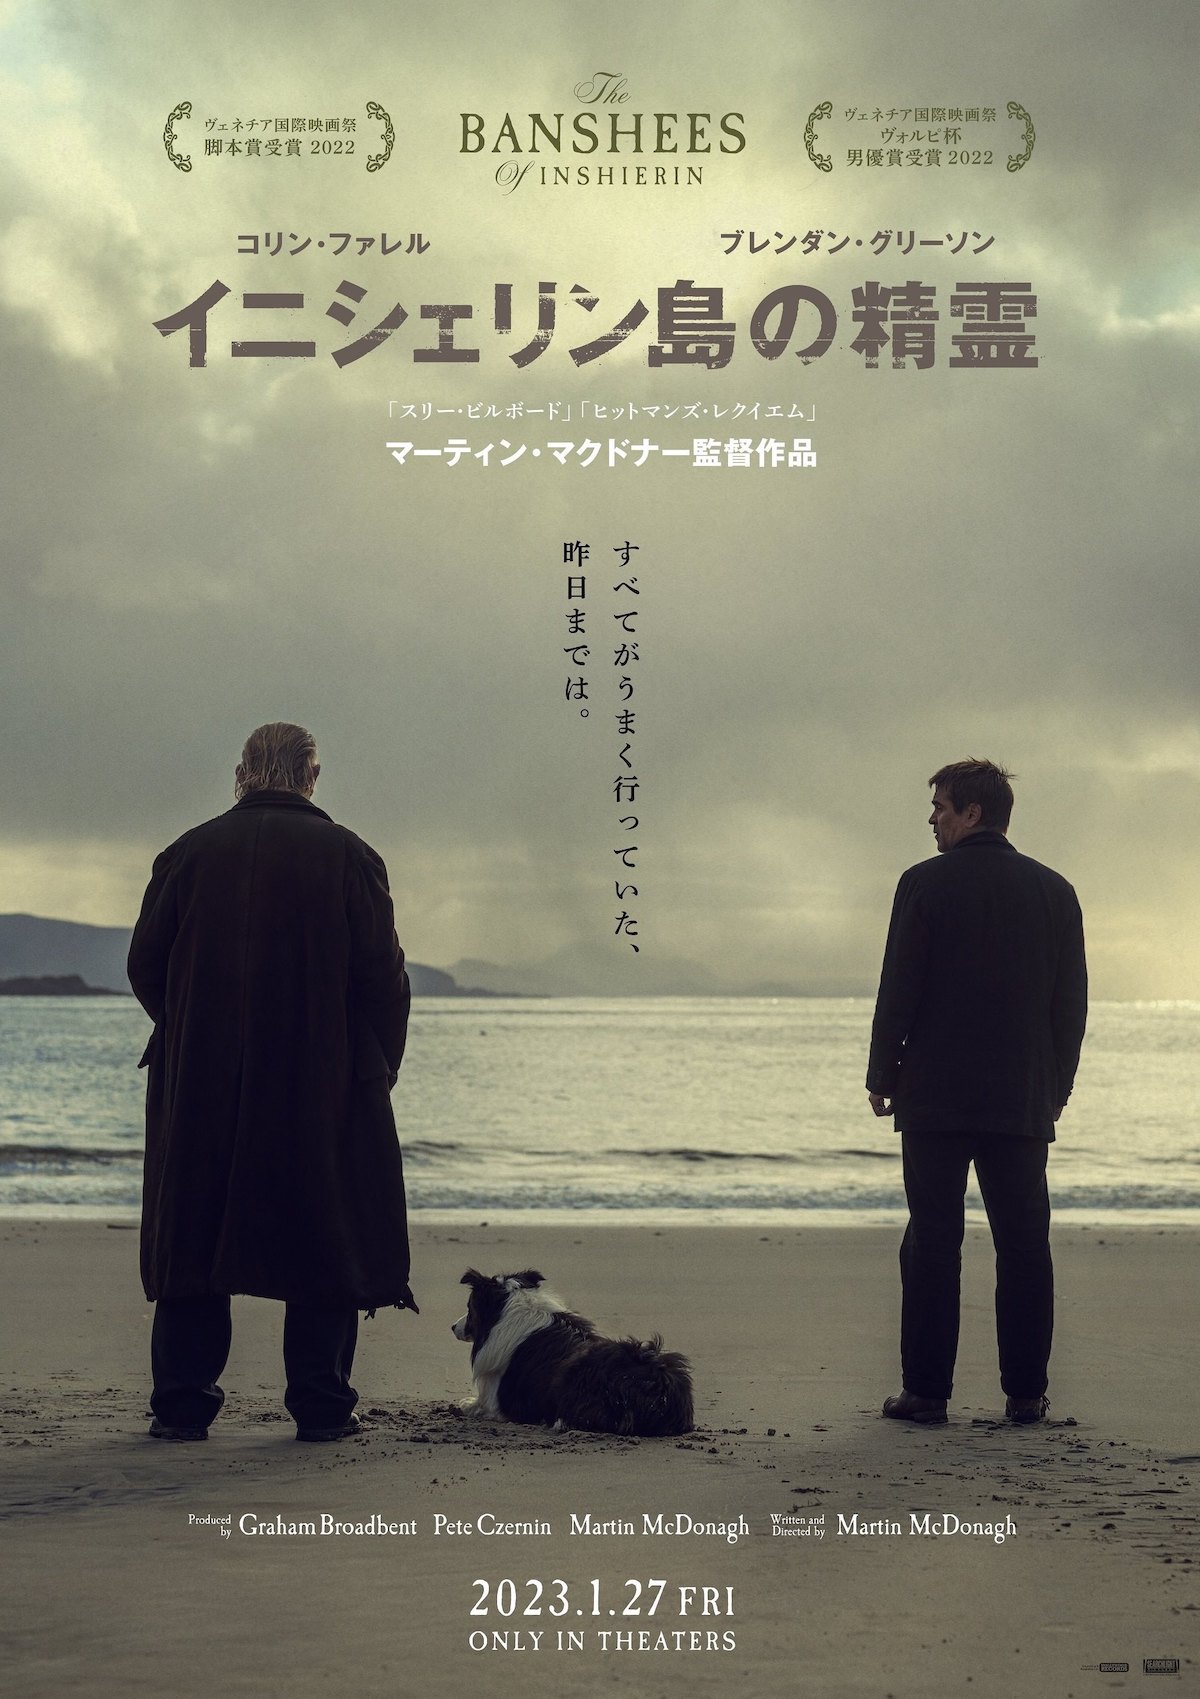 『イニシェリン島の精霊』日本版ポスター公開